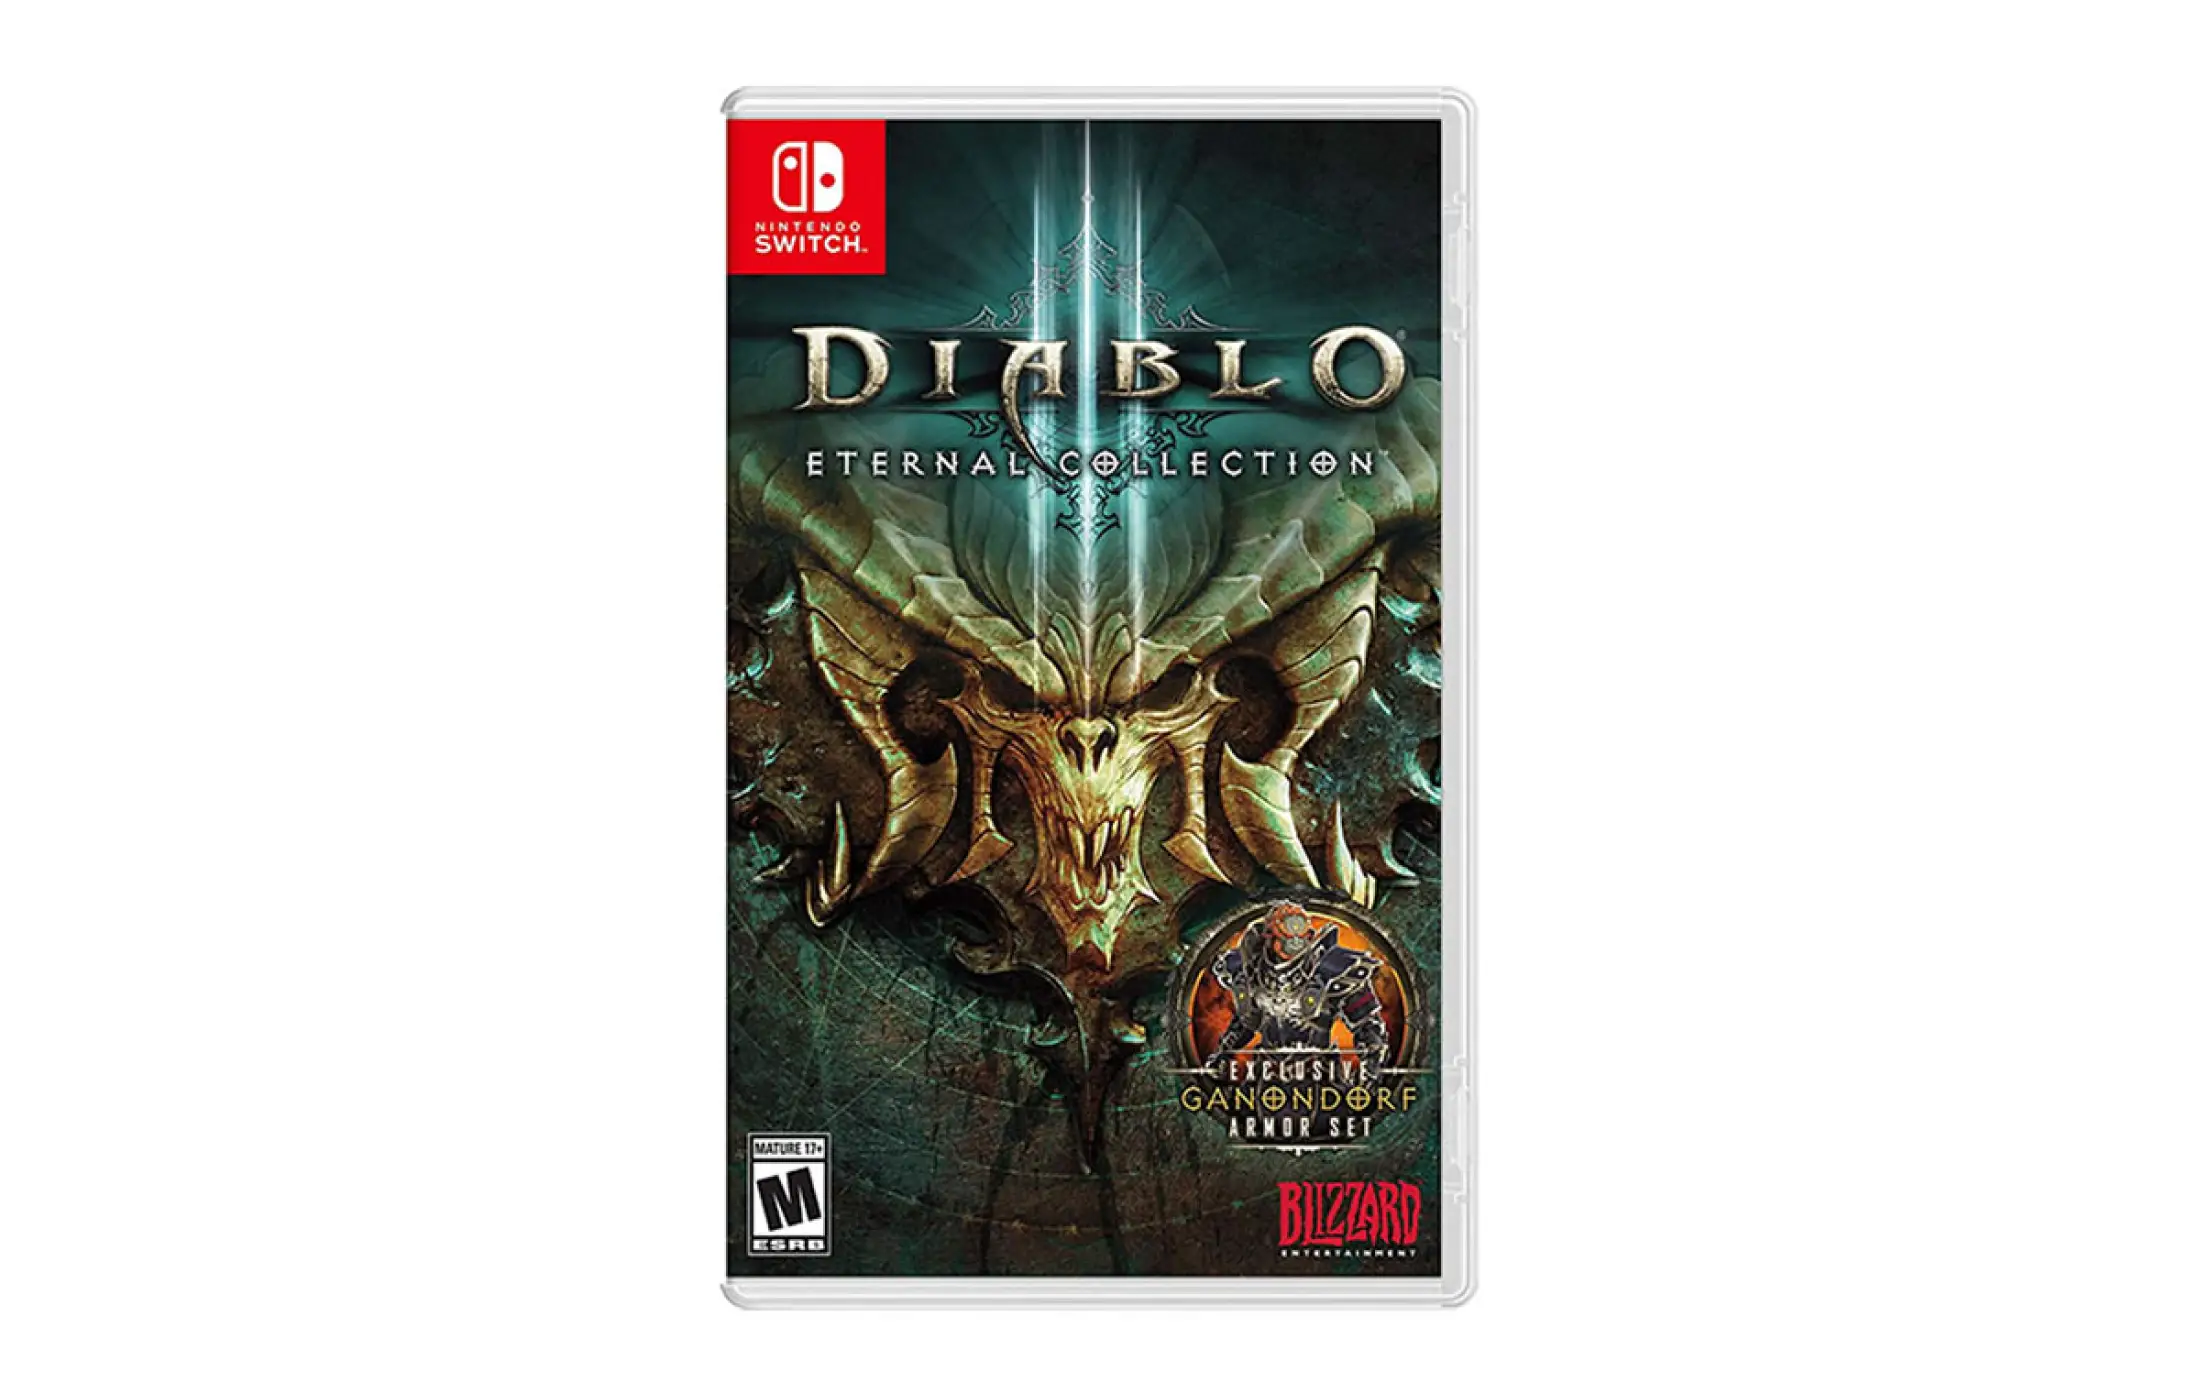 Diablo 3 nintendo. Diablo 3 Nintendo Switch. Diablo 3 Eternal collection. Diablo III: Eternal collection Nintendo. Диабло 3 свитч.